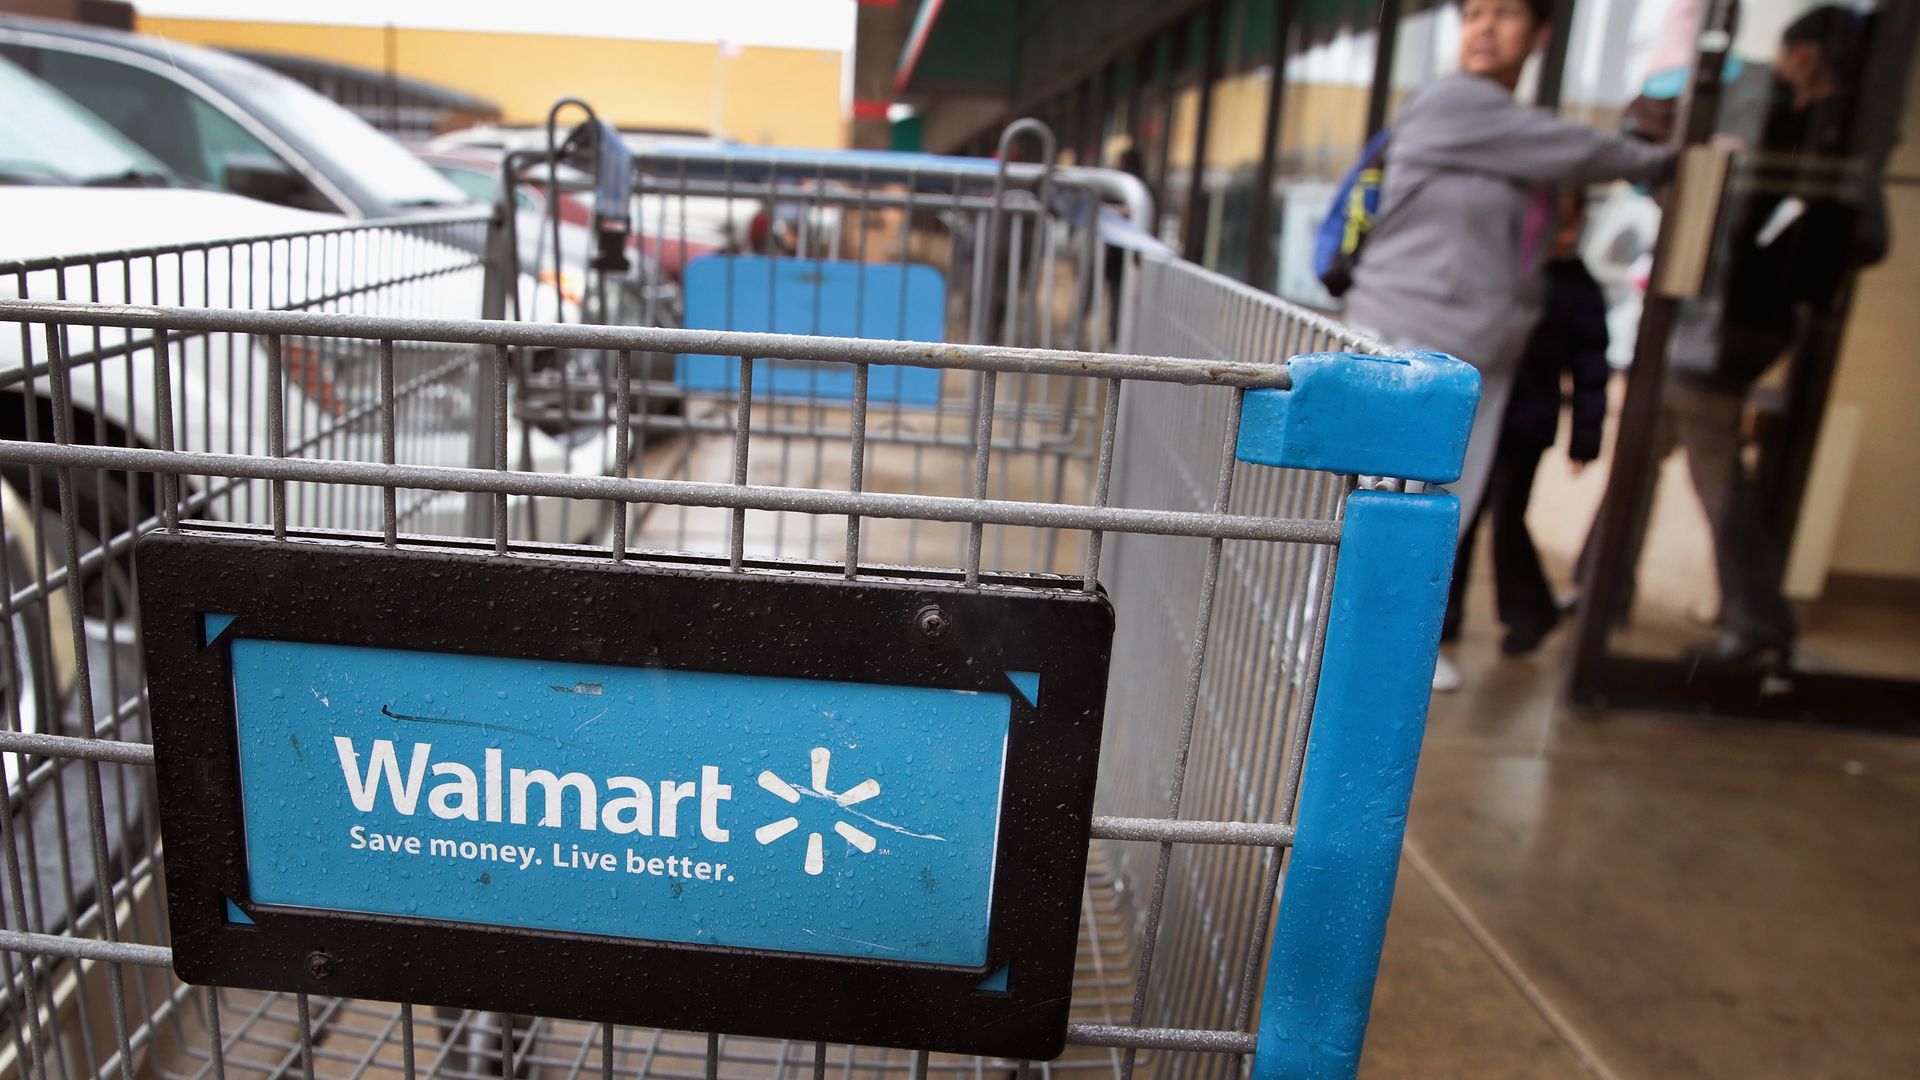 A Walmart shopping cart